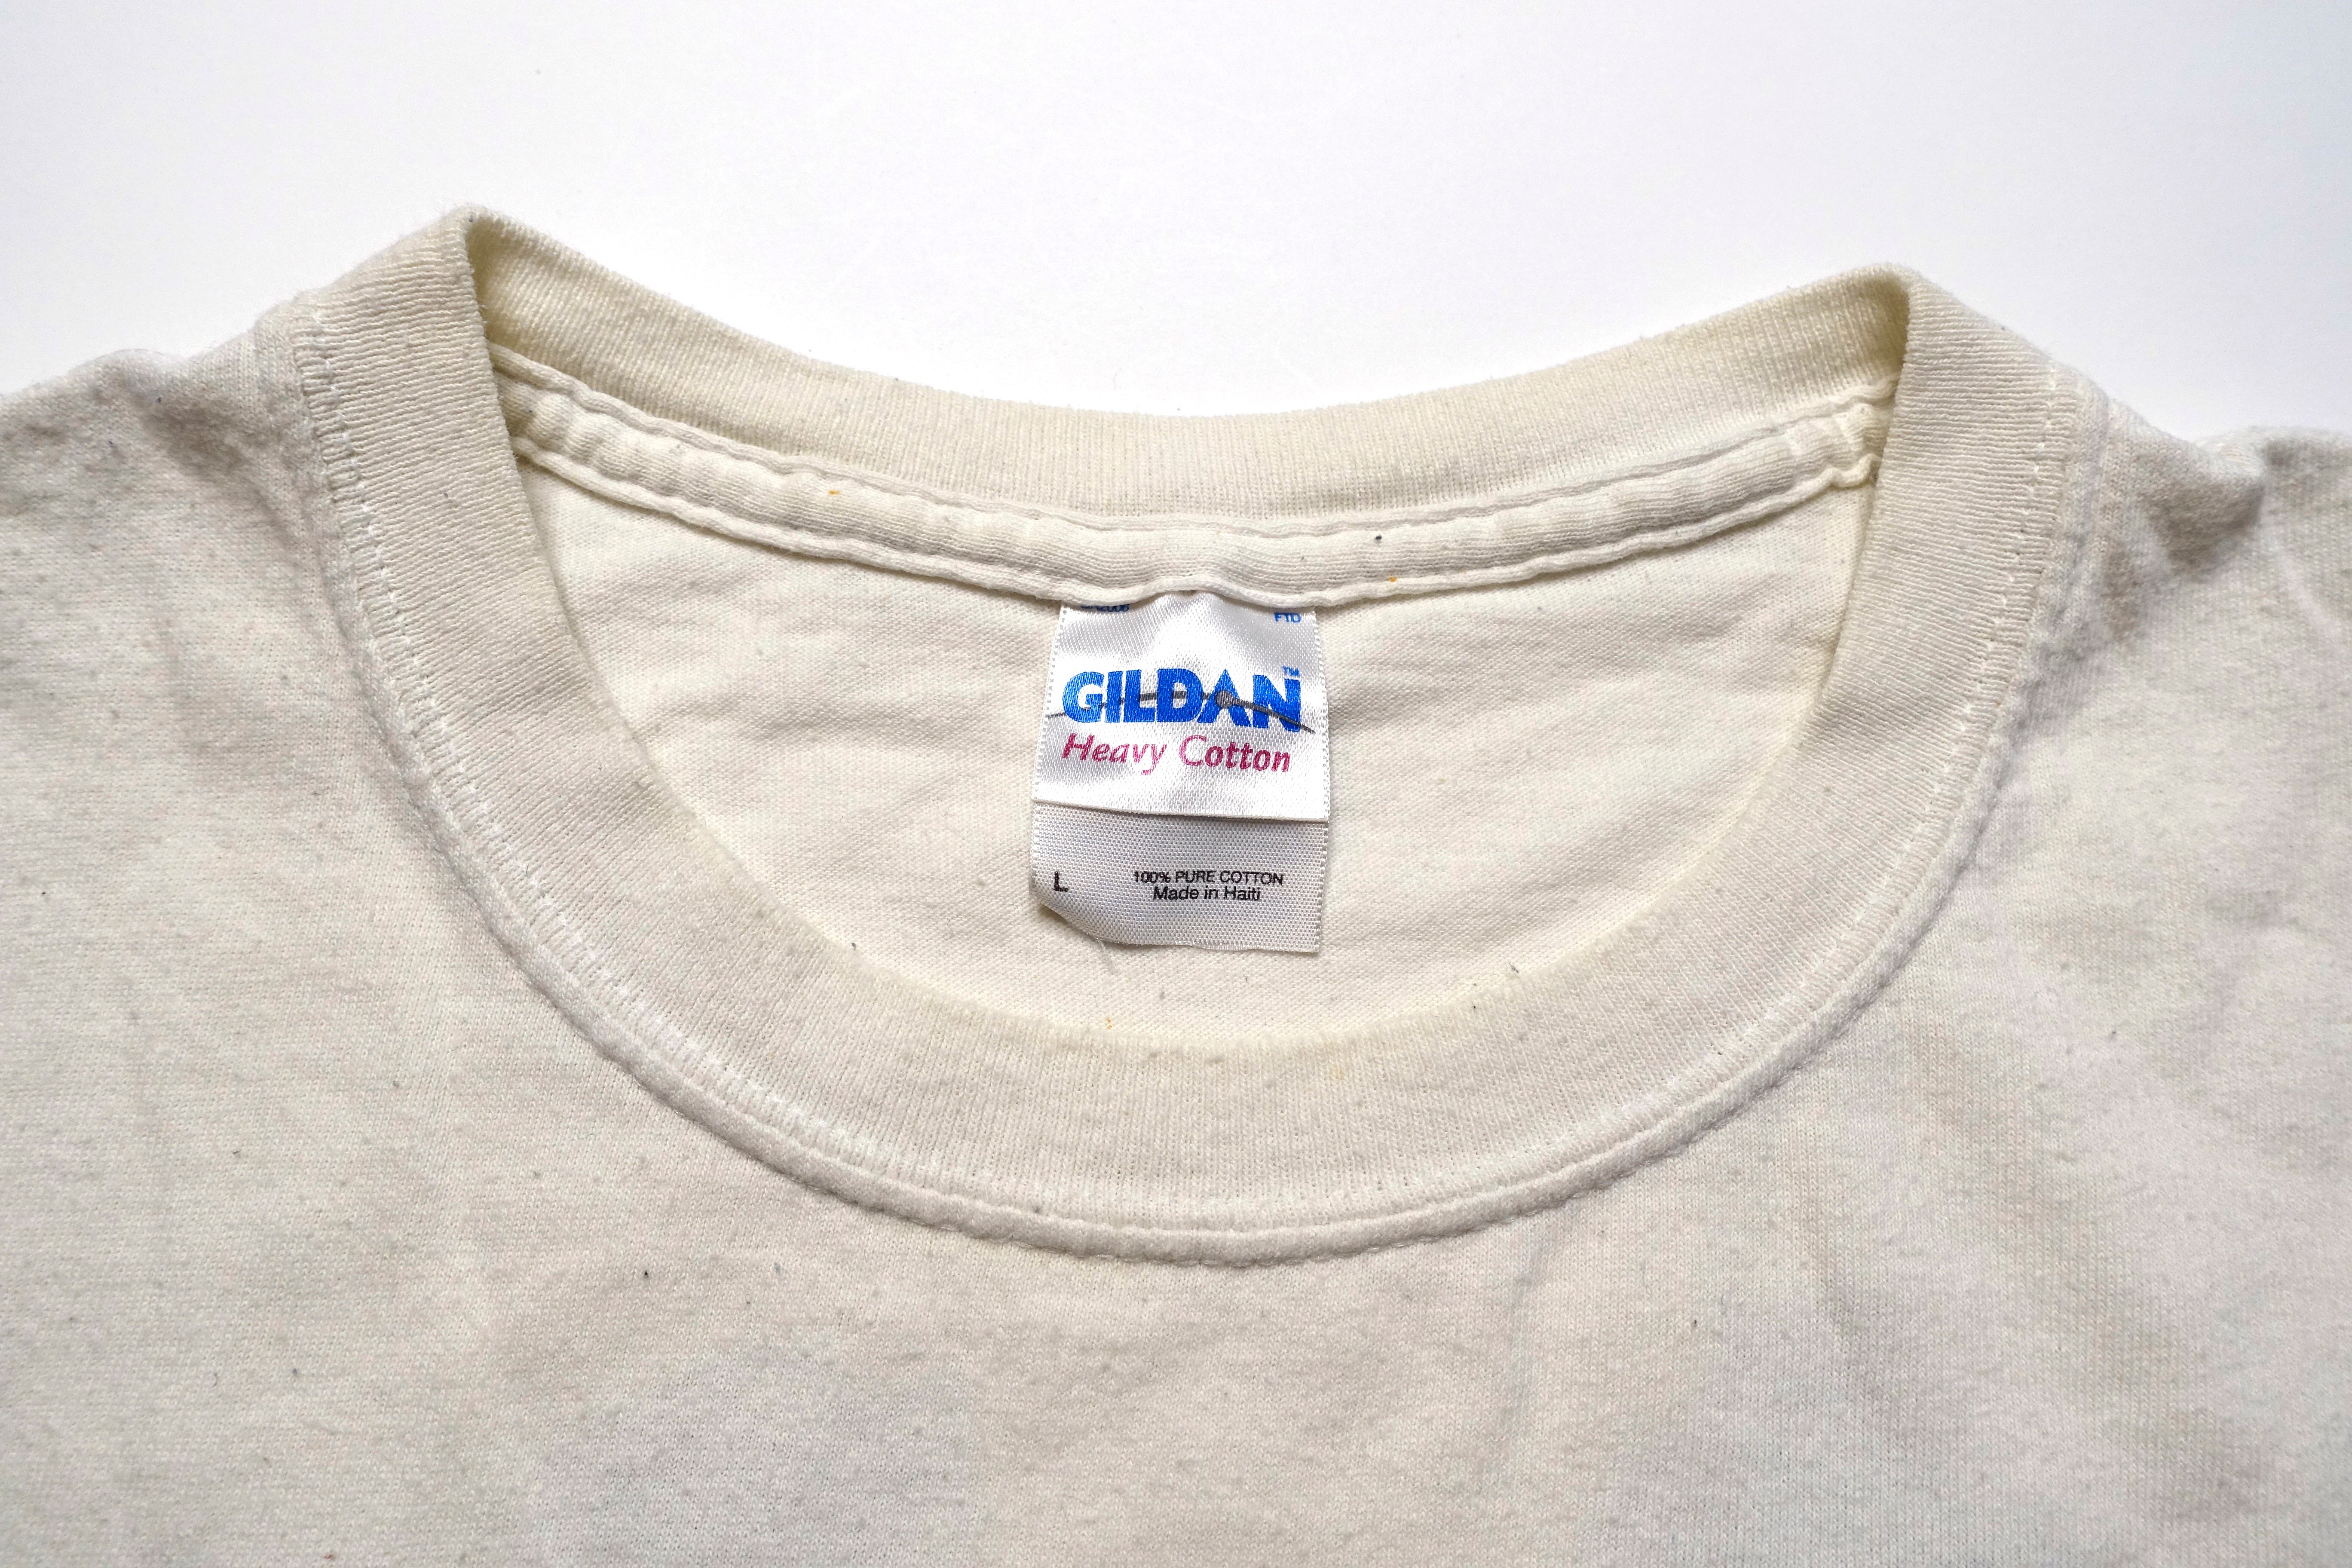 Swiz - Pocket Logo Shirt Size Large